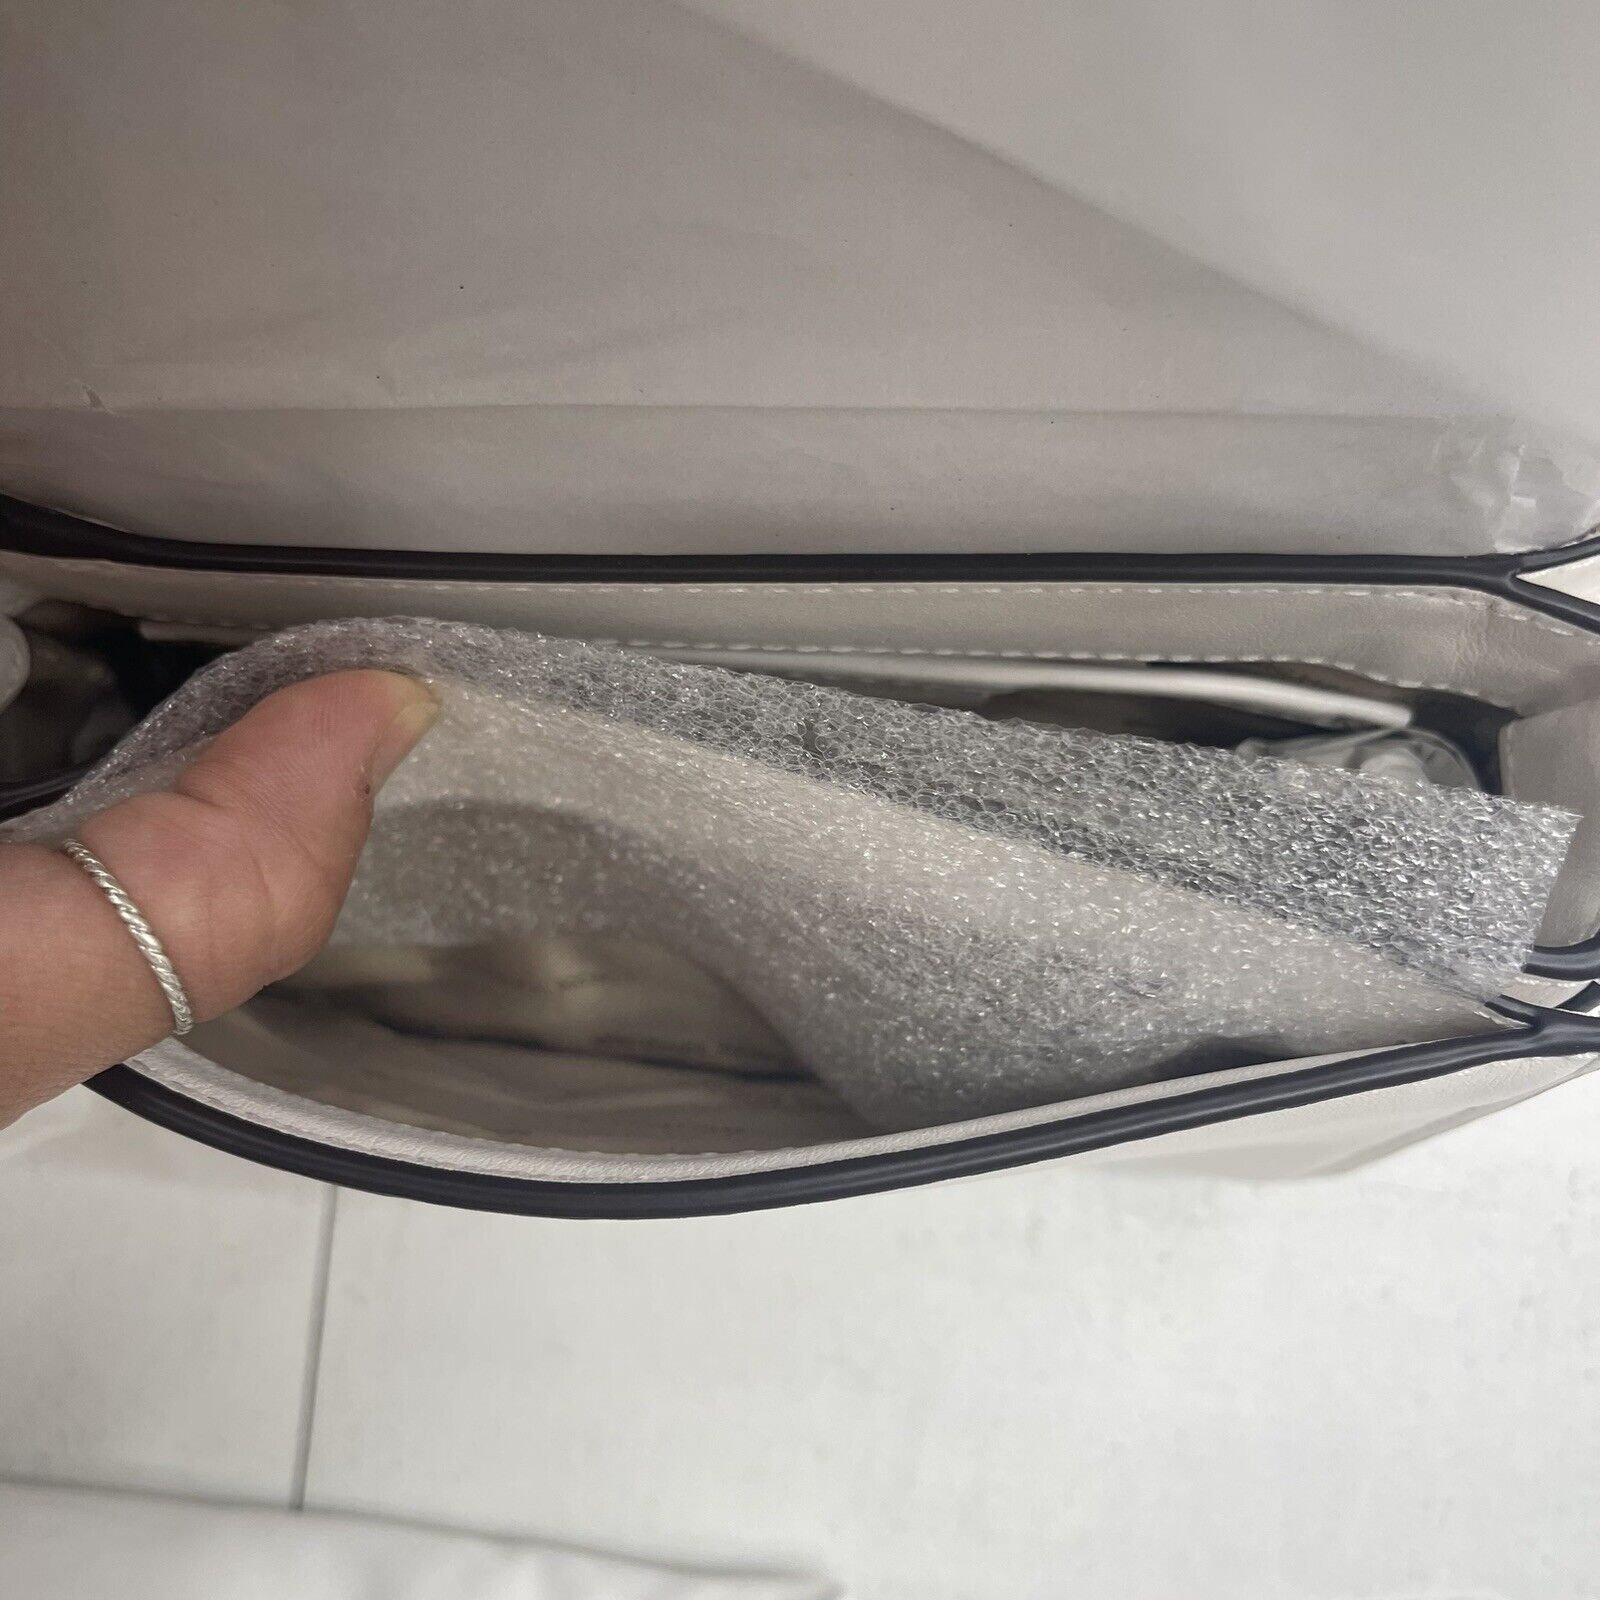 Michael Kors Bedford Gusset Crossbody Bag – Buy the goddamn bag